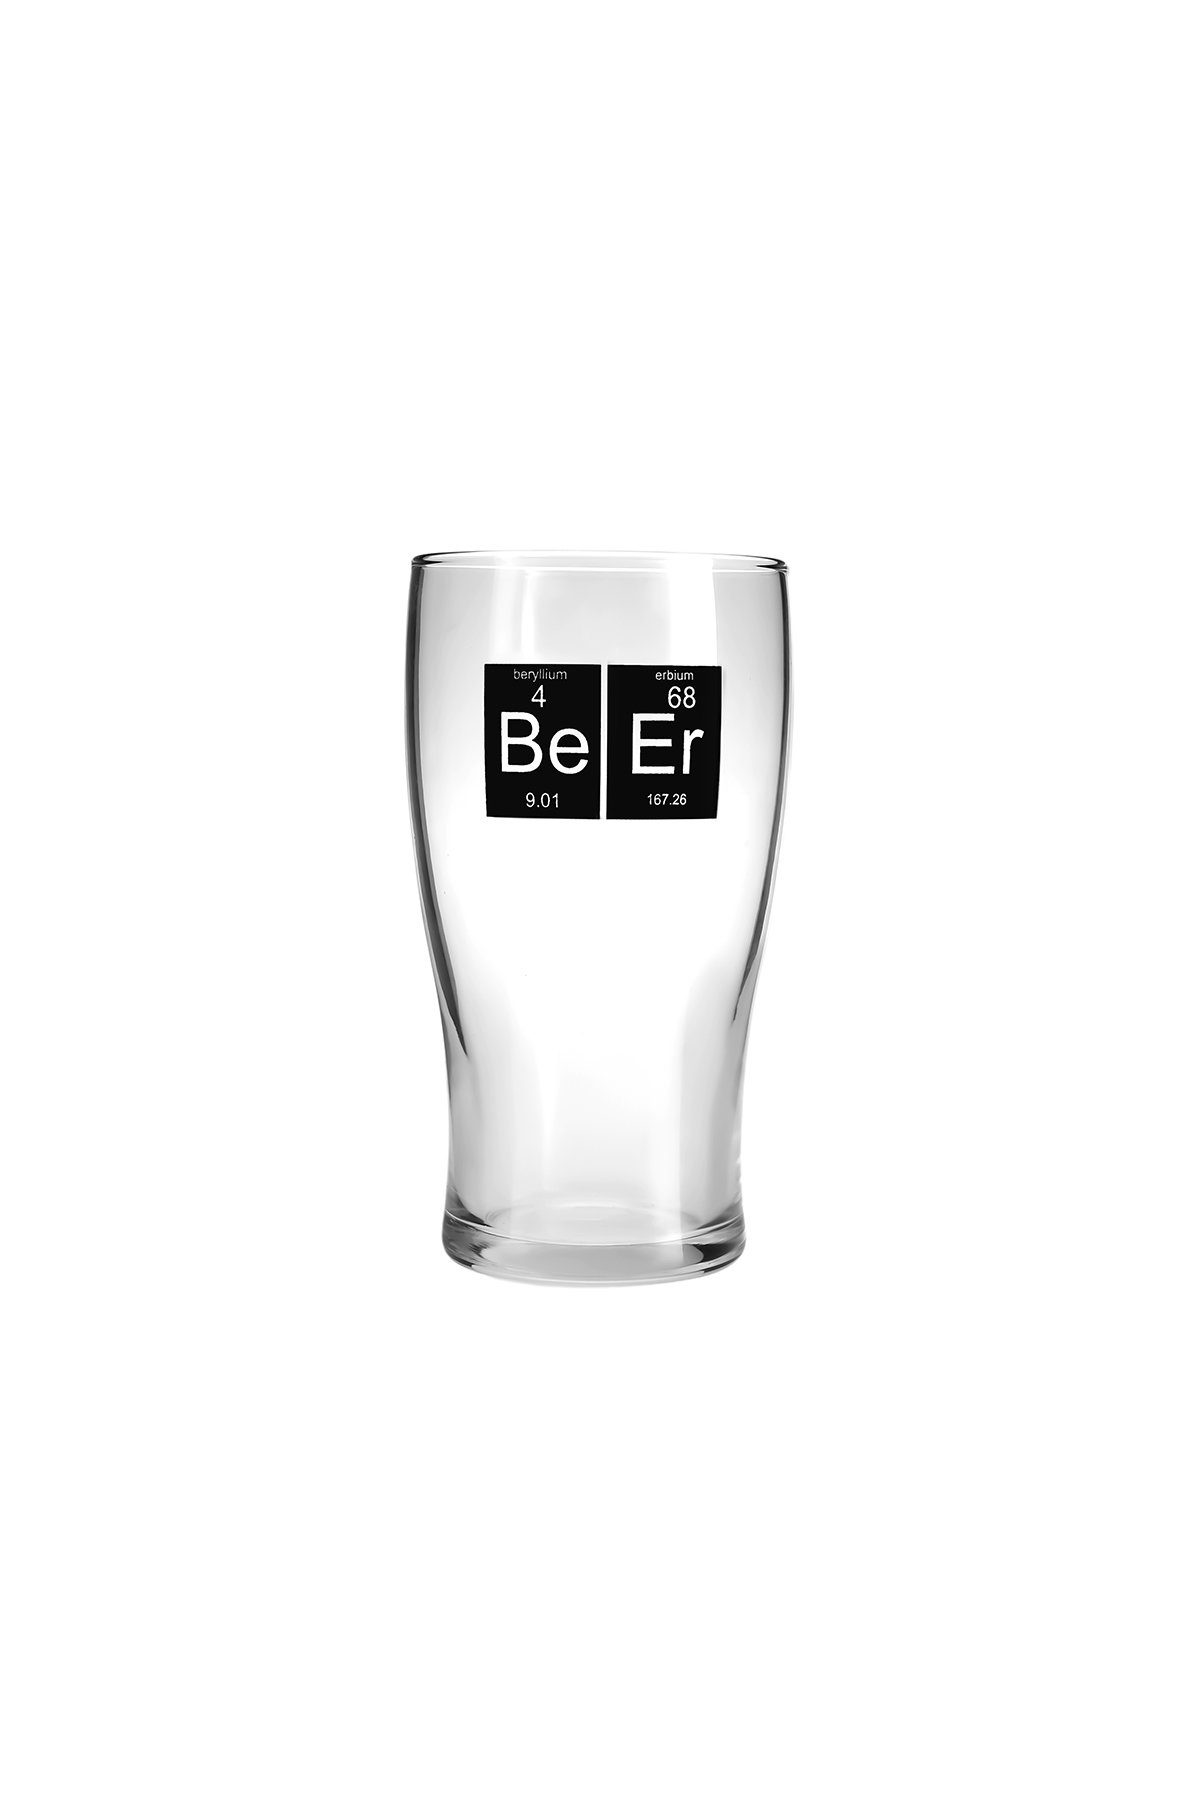 Karaca Glas Bierglas-set 454ml Personen, Glas, Beerbecher für 2